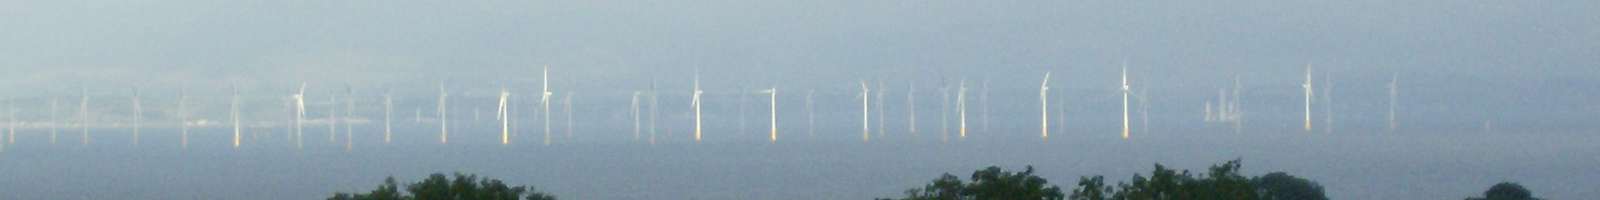 Cardigan Bay wind farm